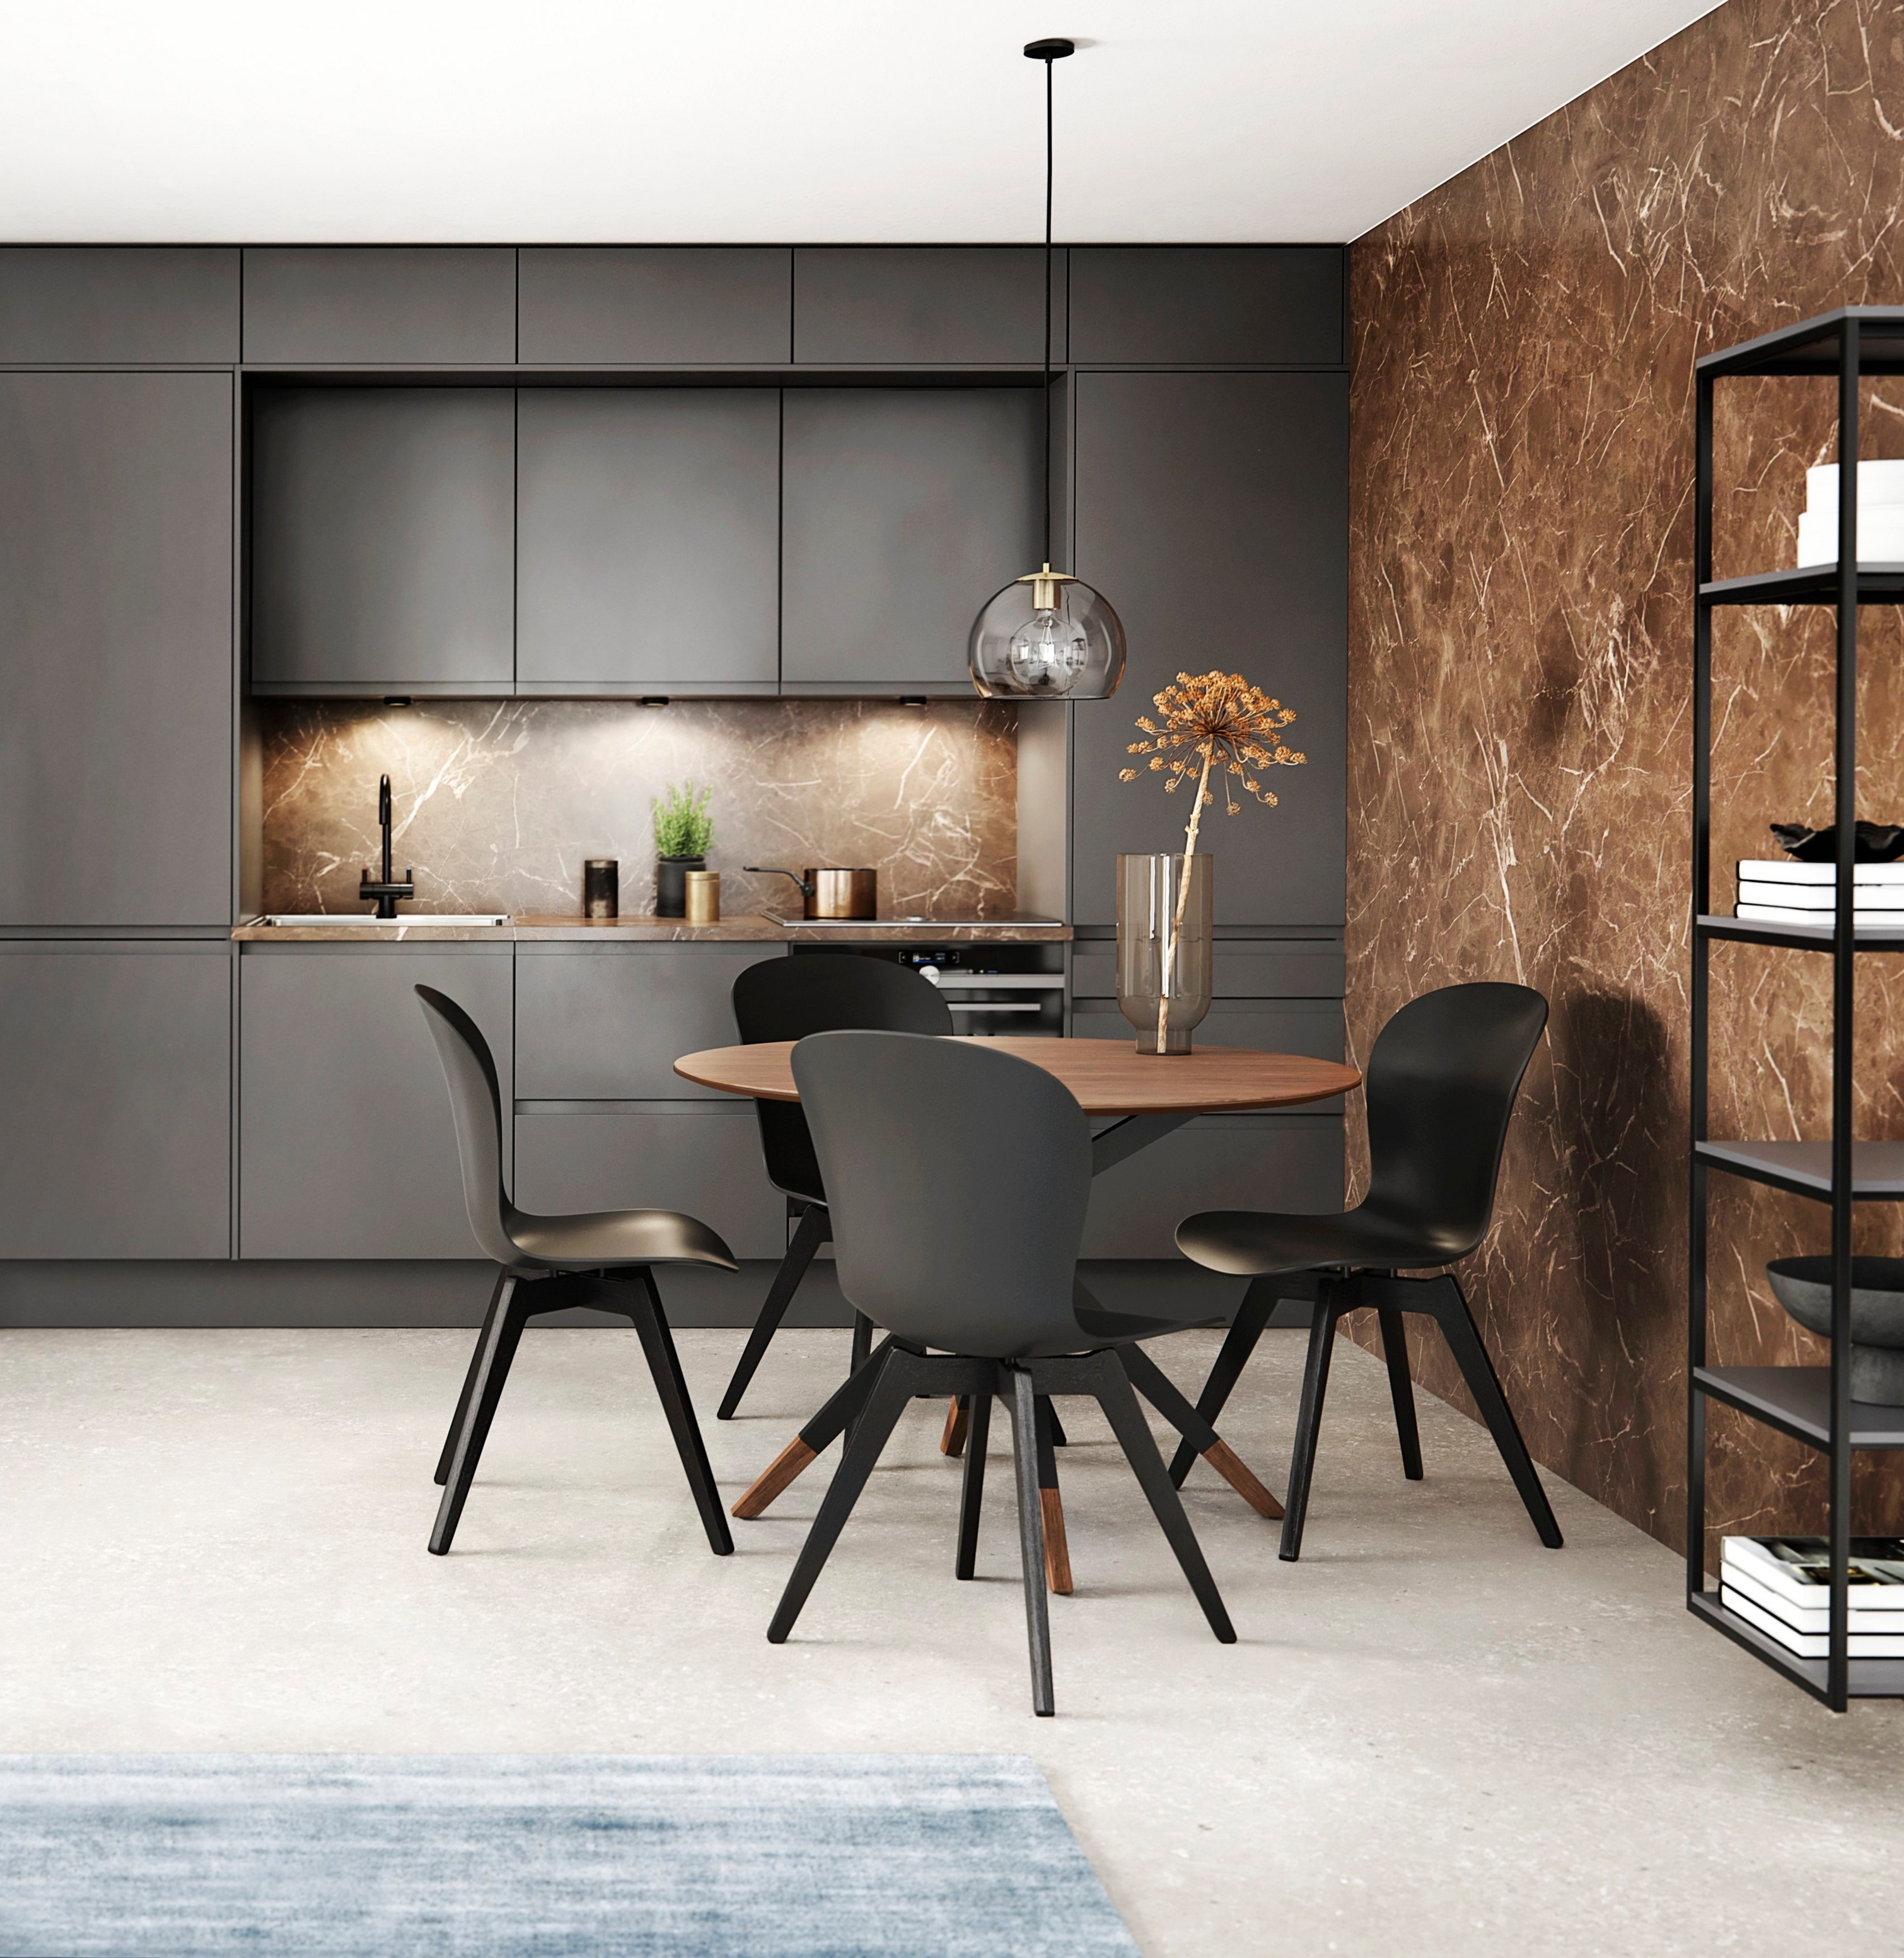 Modern konyha sötét szekrénnyel, márvány hátfallal, étkező kerek asztallal és fekete székekkel.